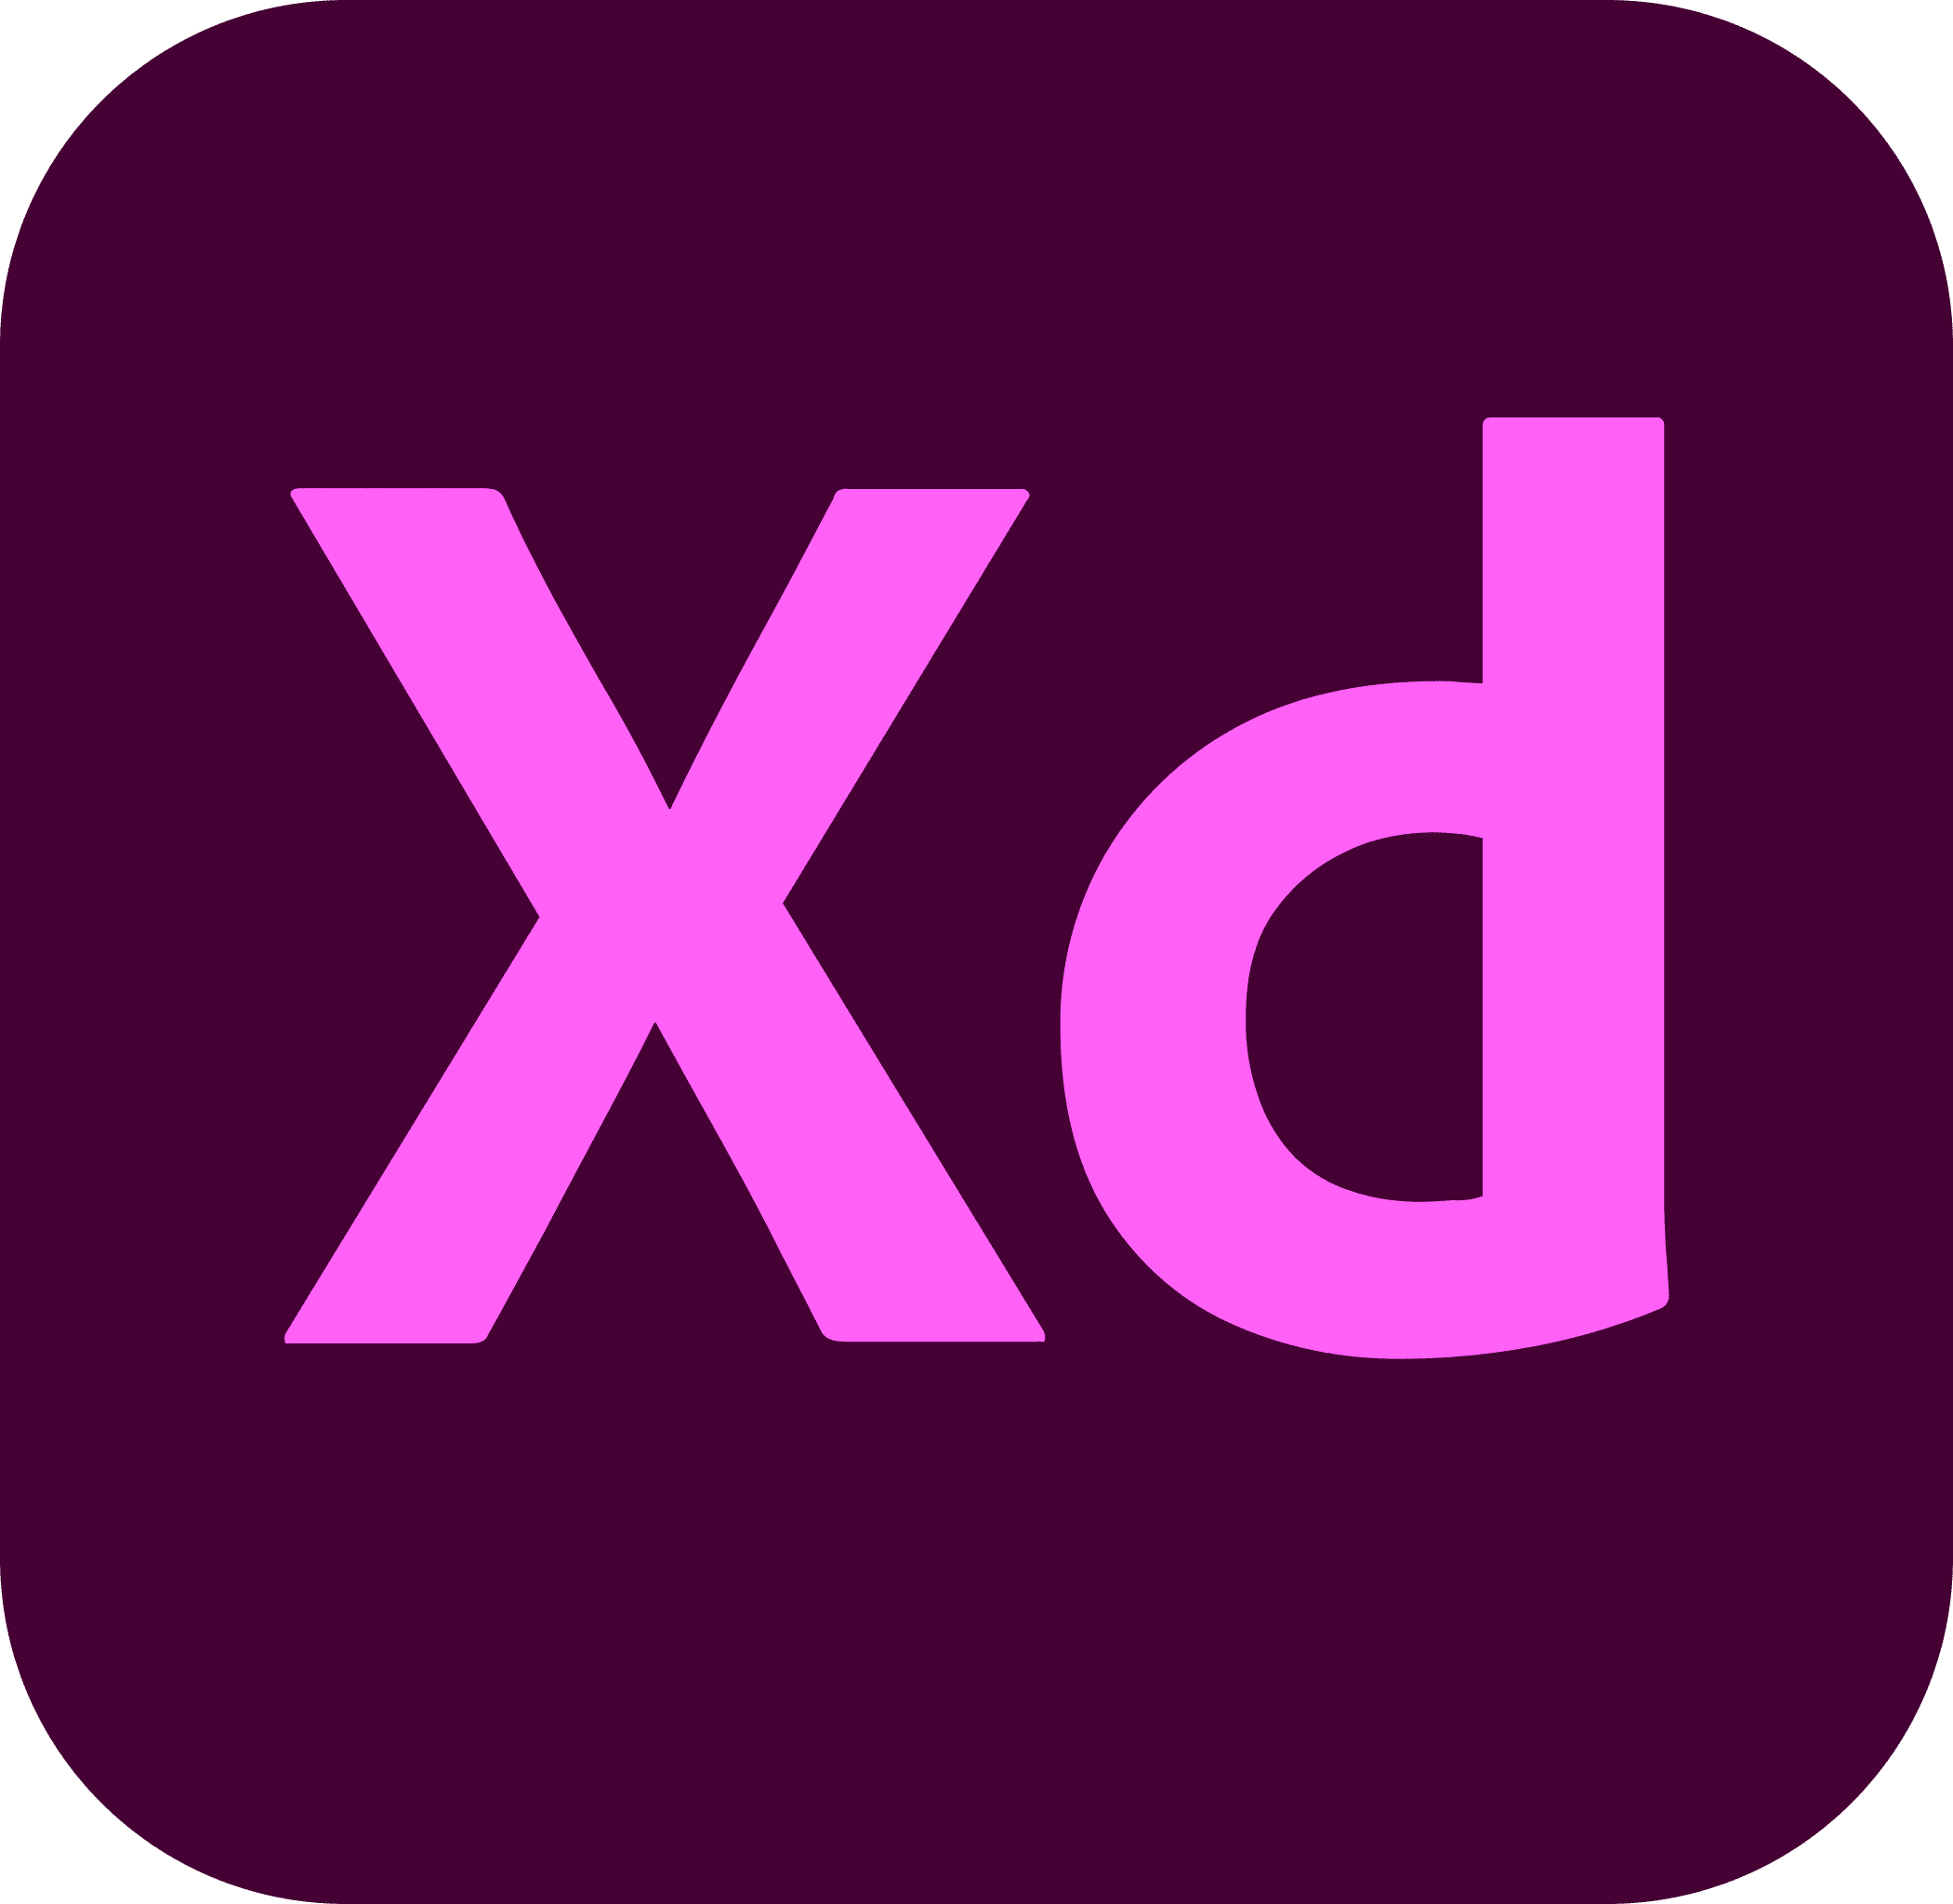 The Adobe XD icon